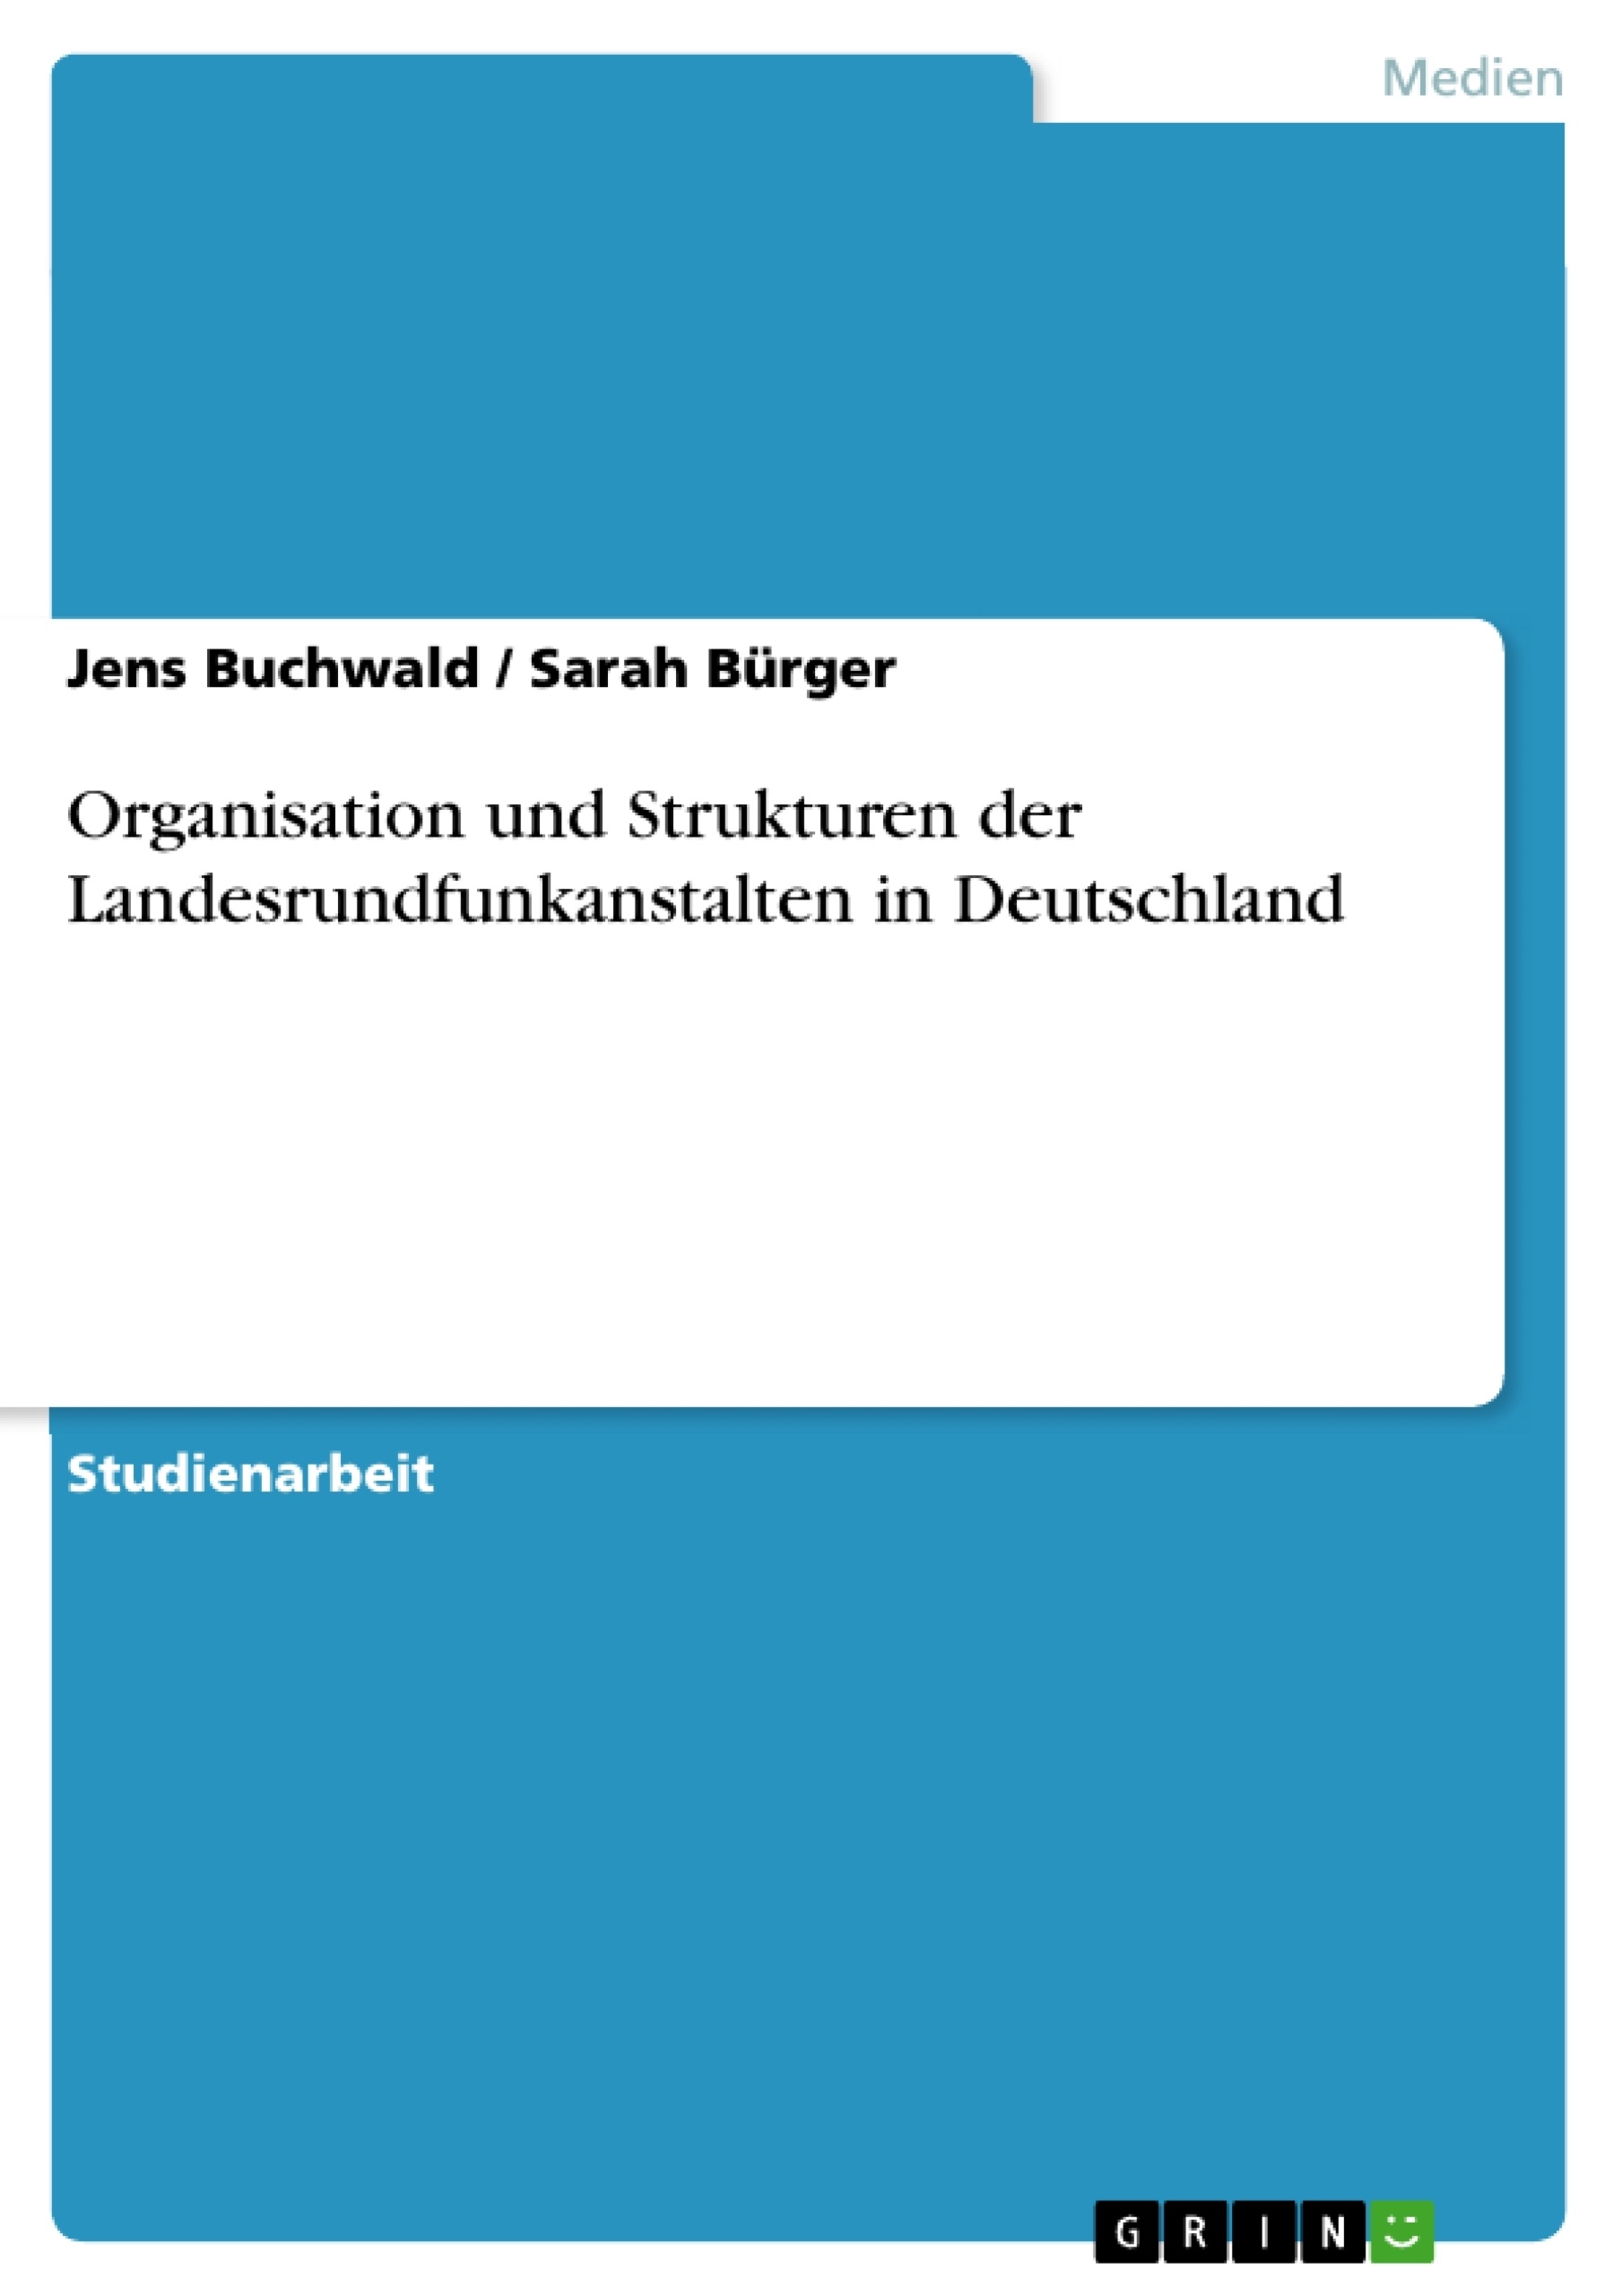 Título: Organisation und Strukturen der Landesrundfunkanstalten in Deutschland